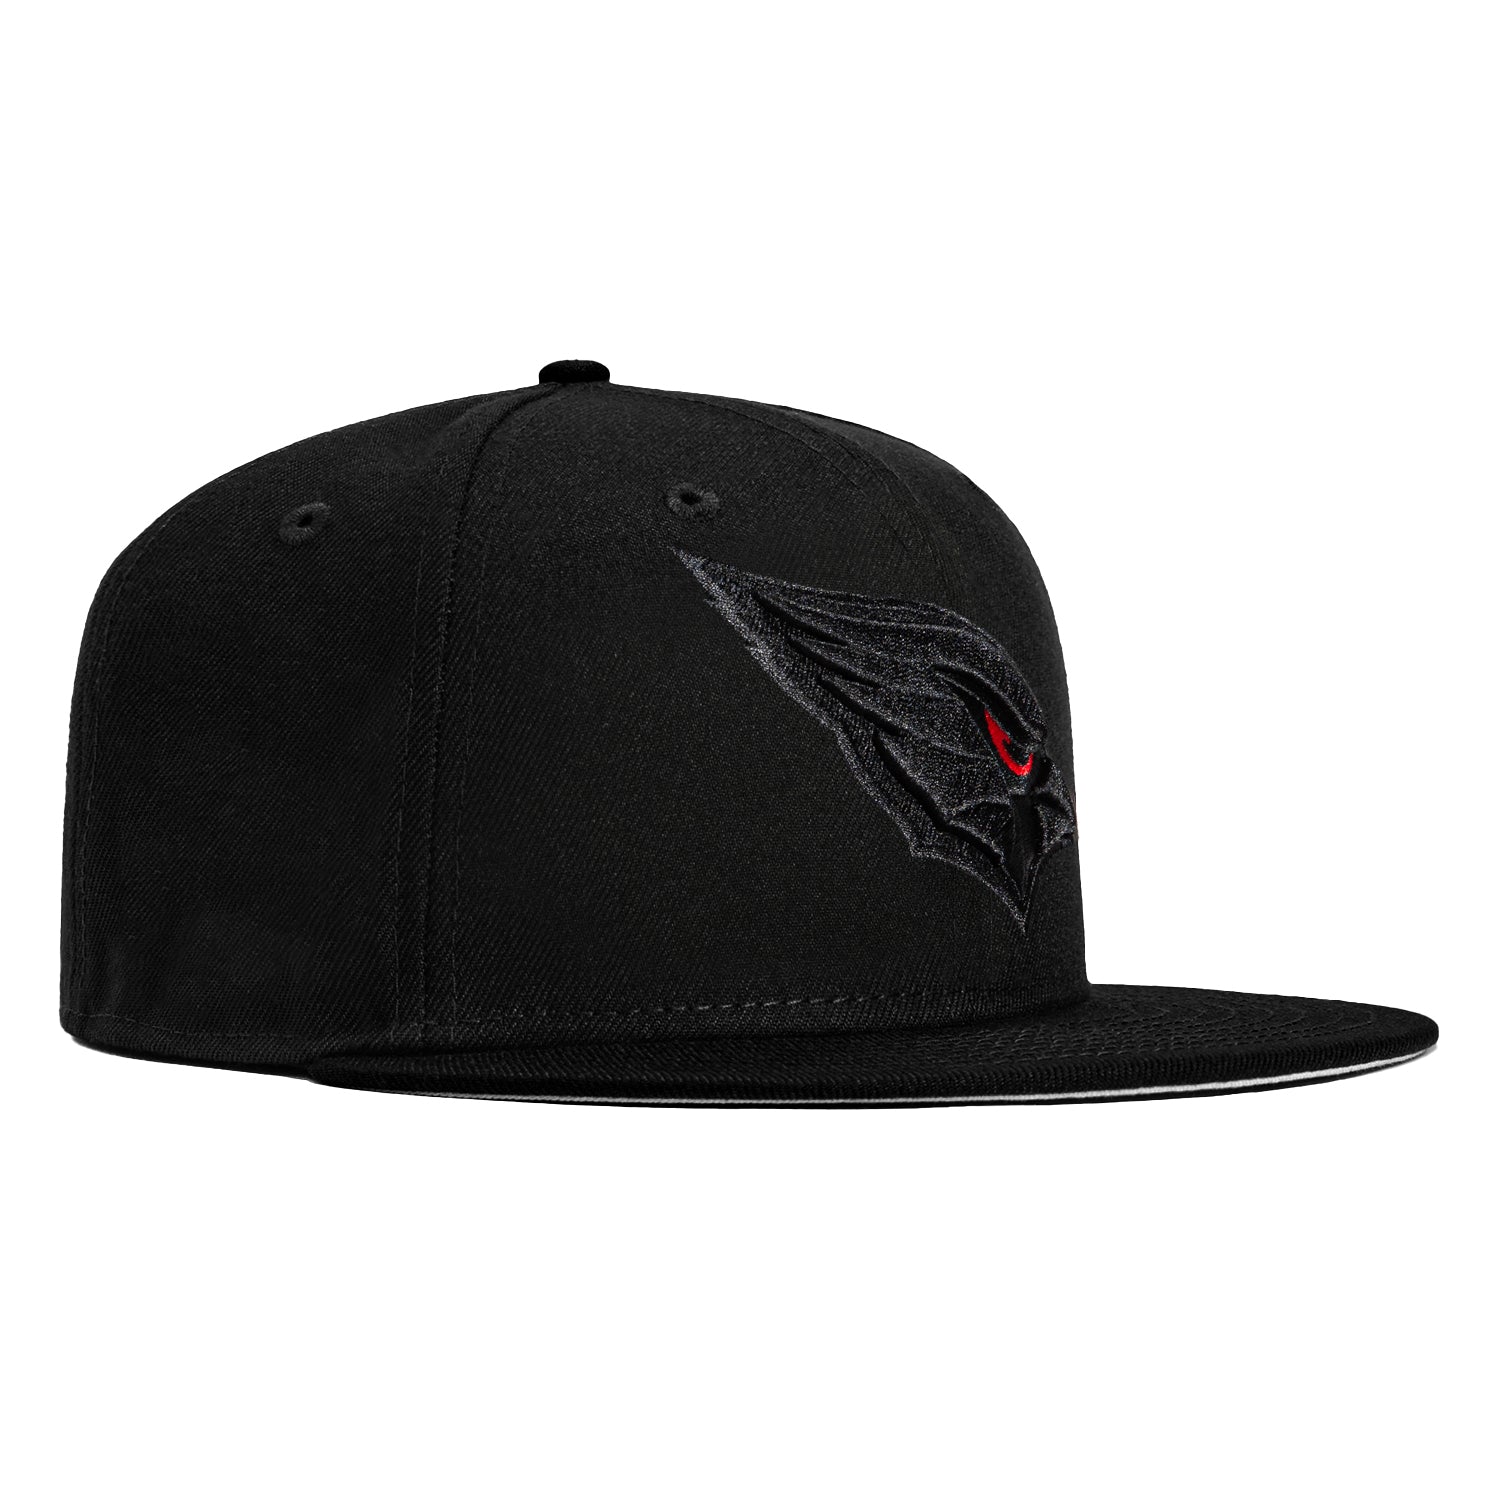 arizona cardinals hat